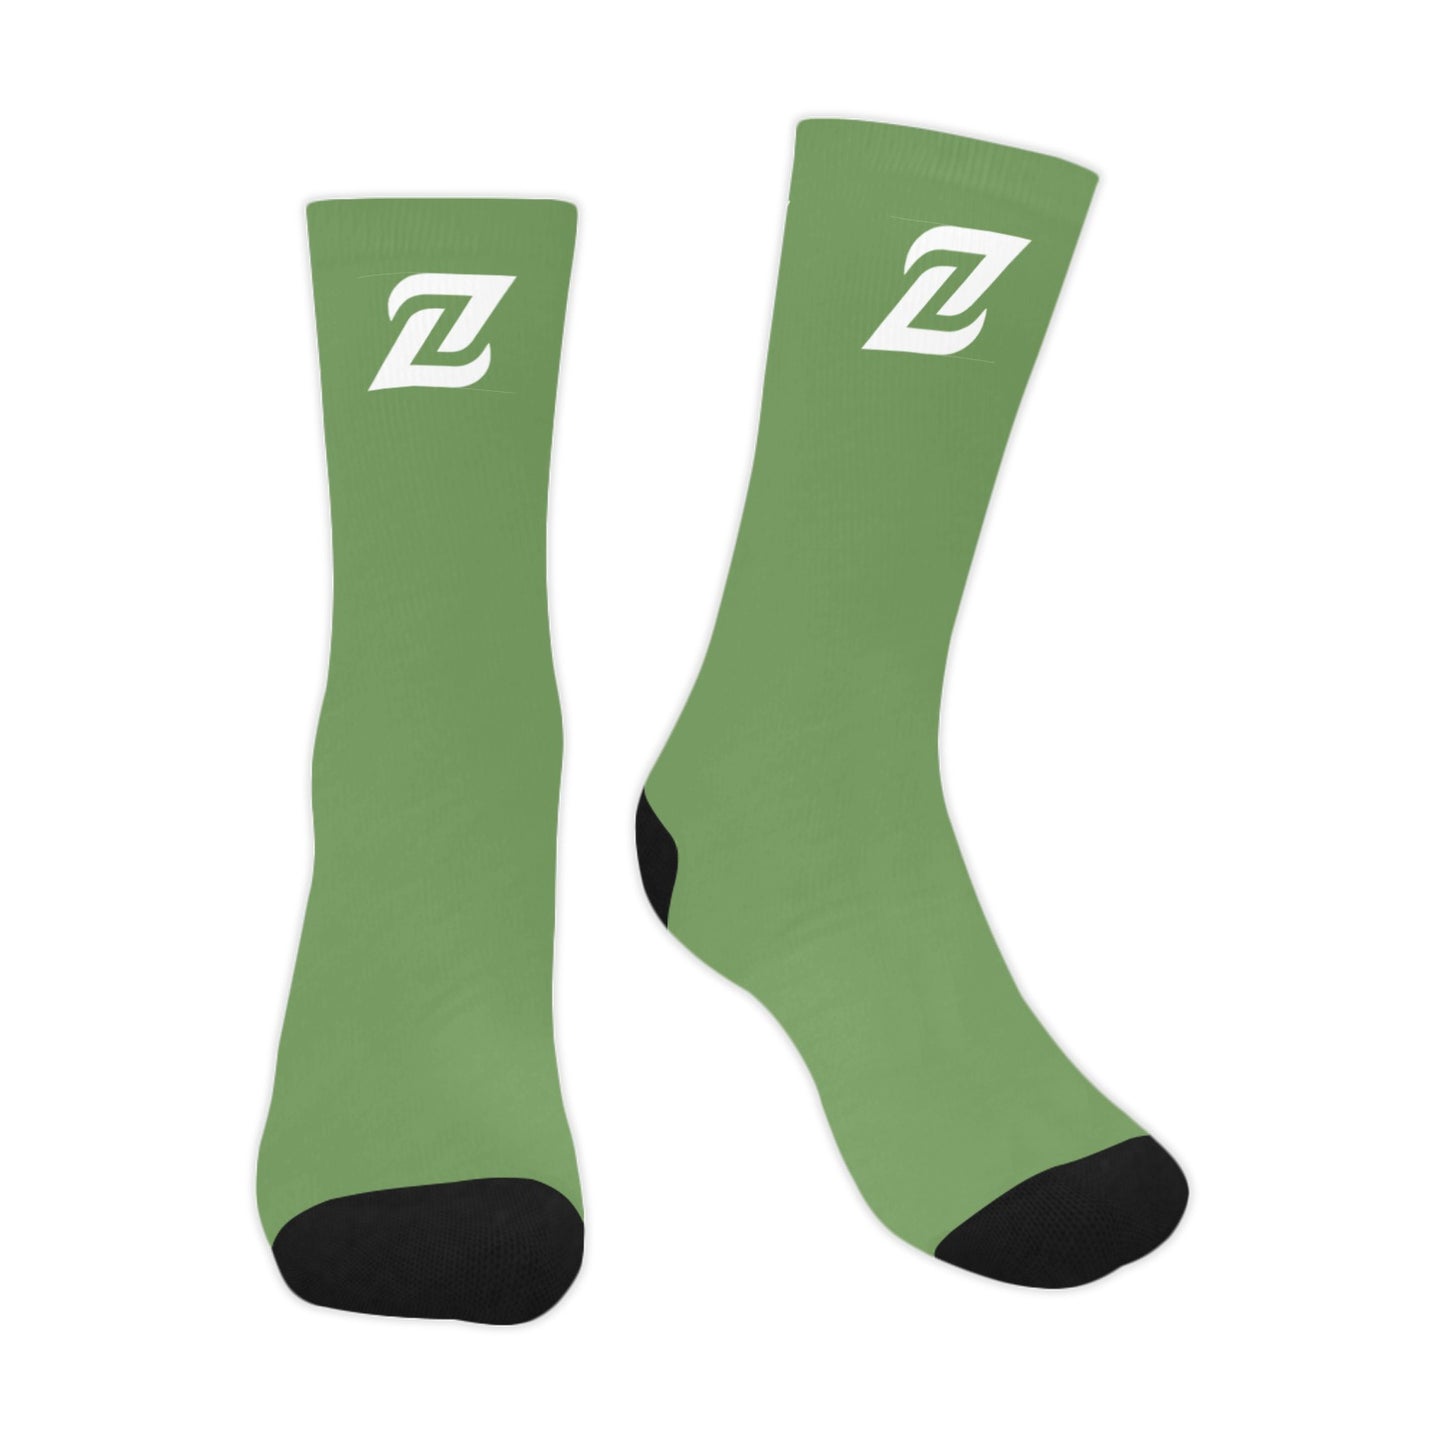 Zen Socks - Green